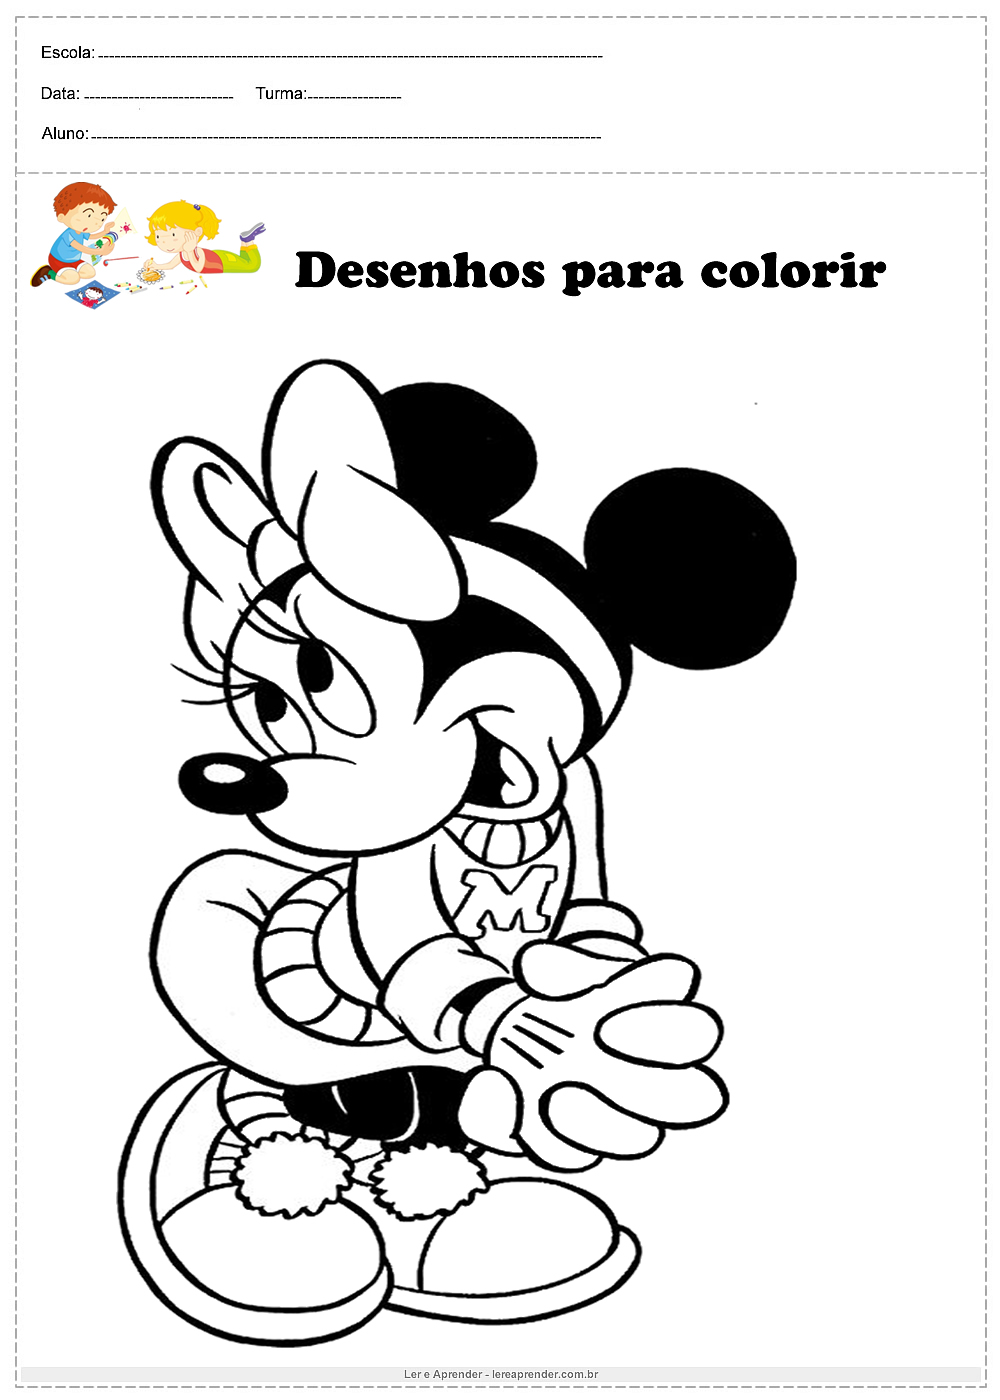 Desenhos Da Disney Para Imprimir - MODISEDU